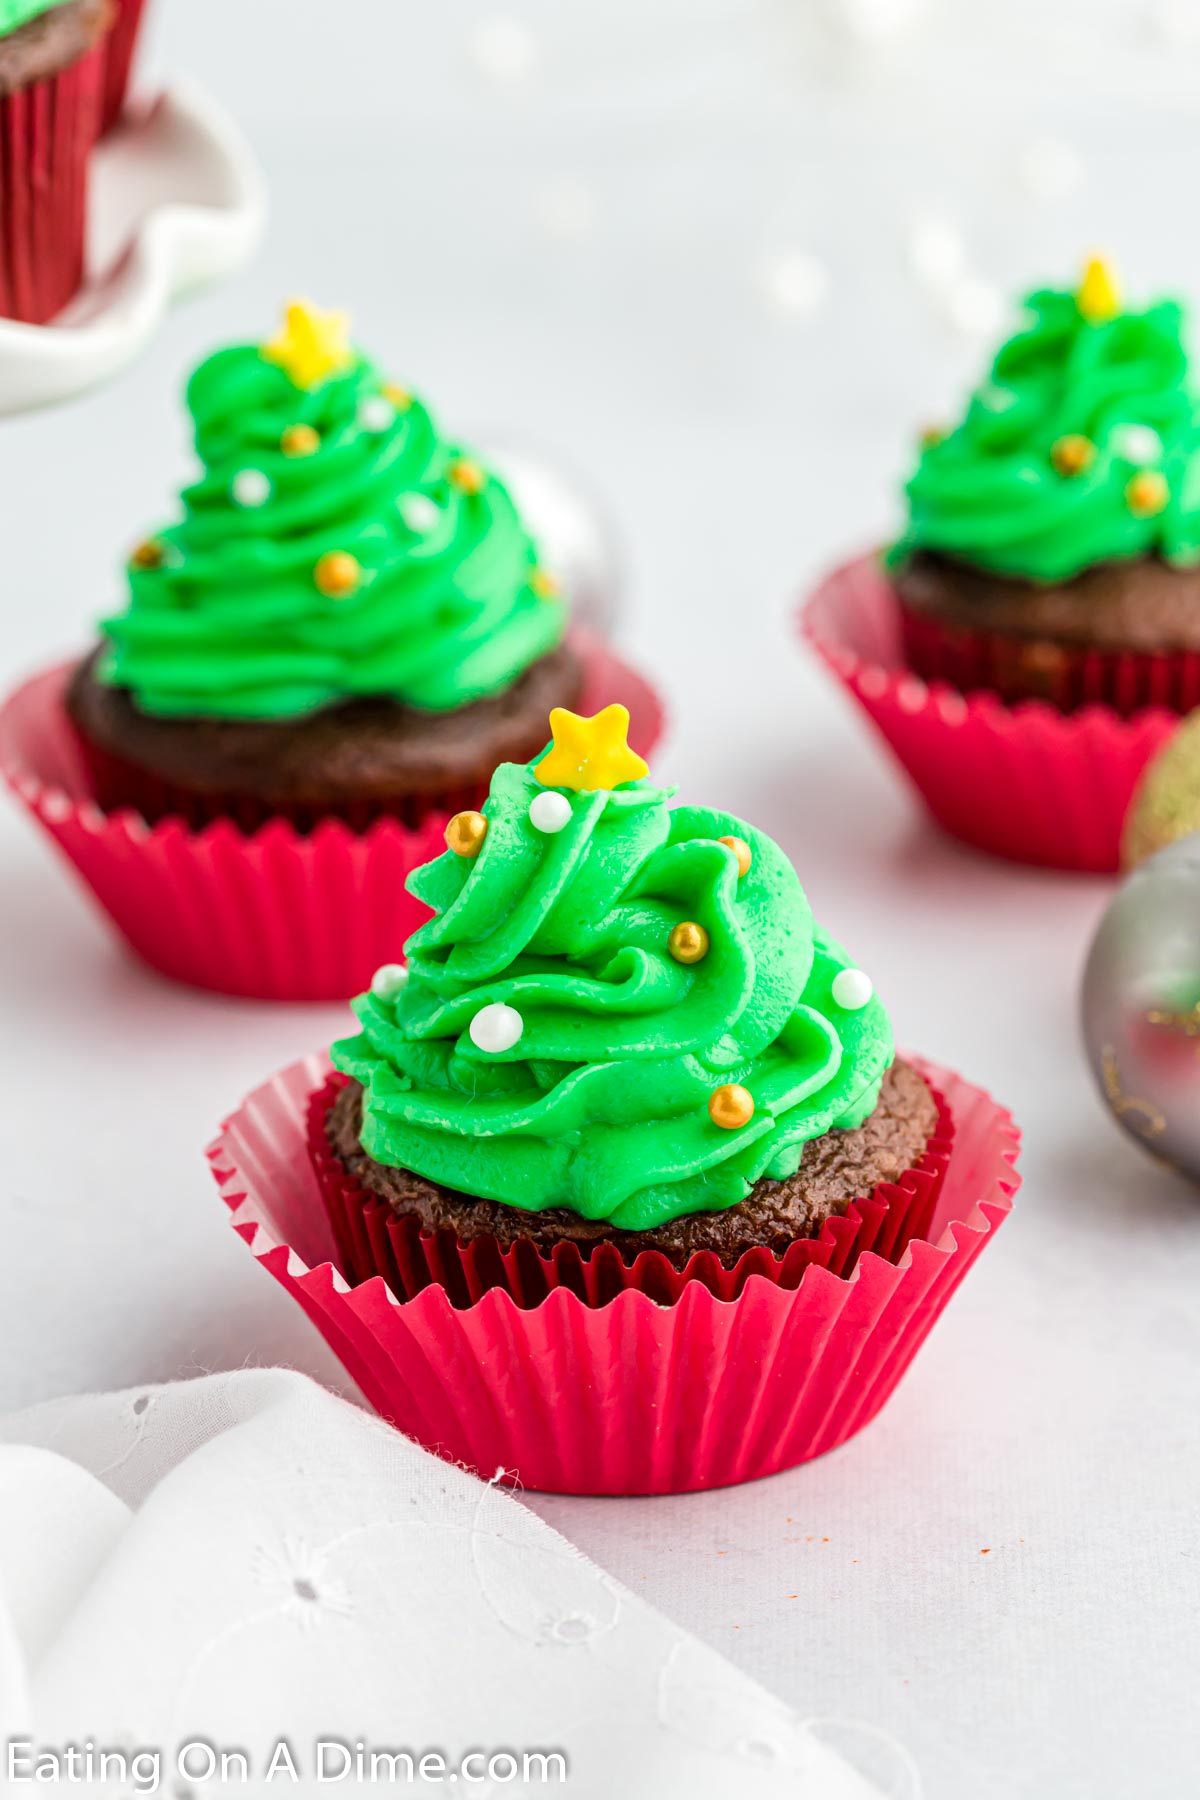 Christmas Tree Cupcakes 